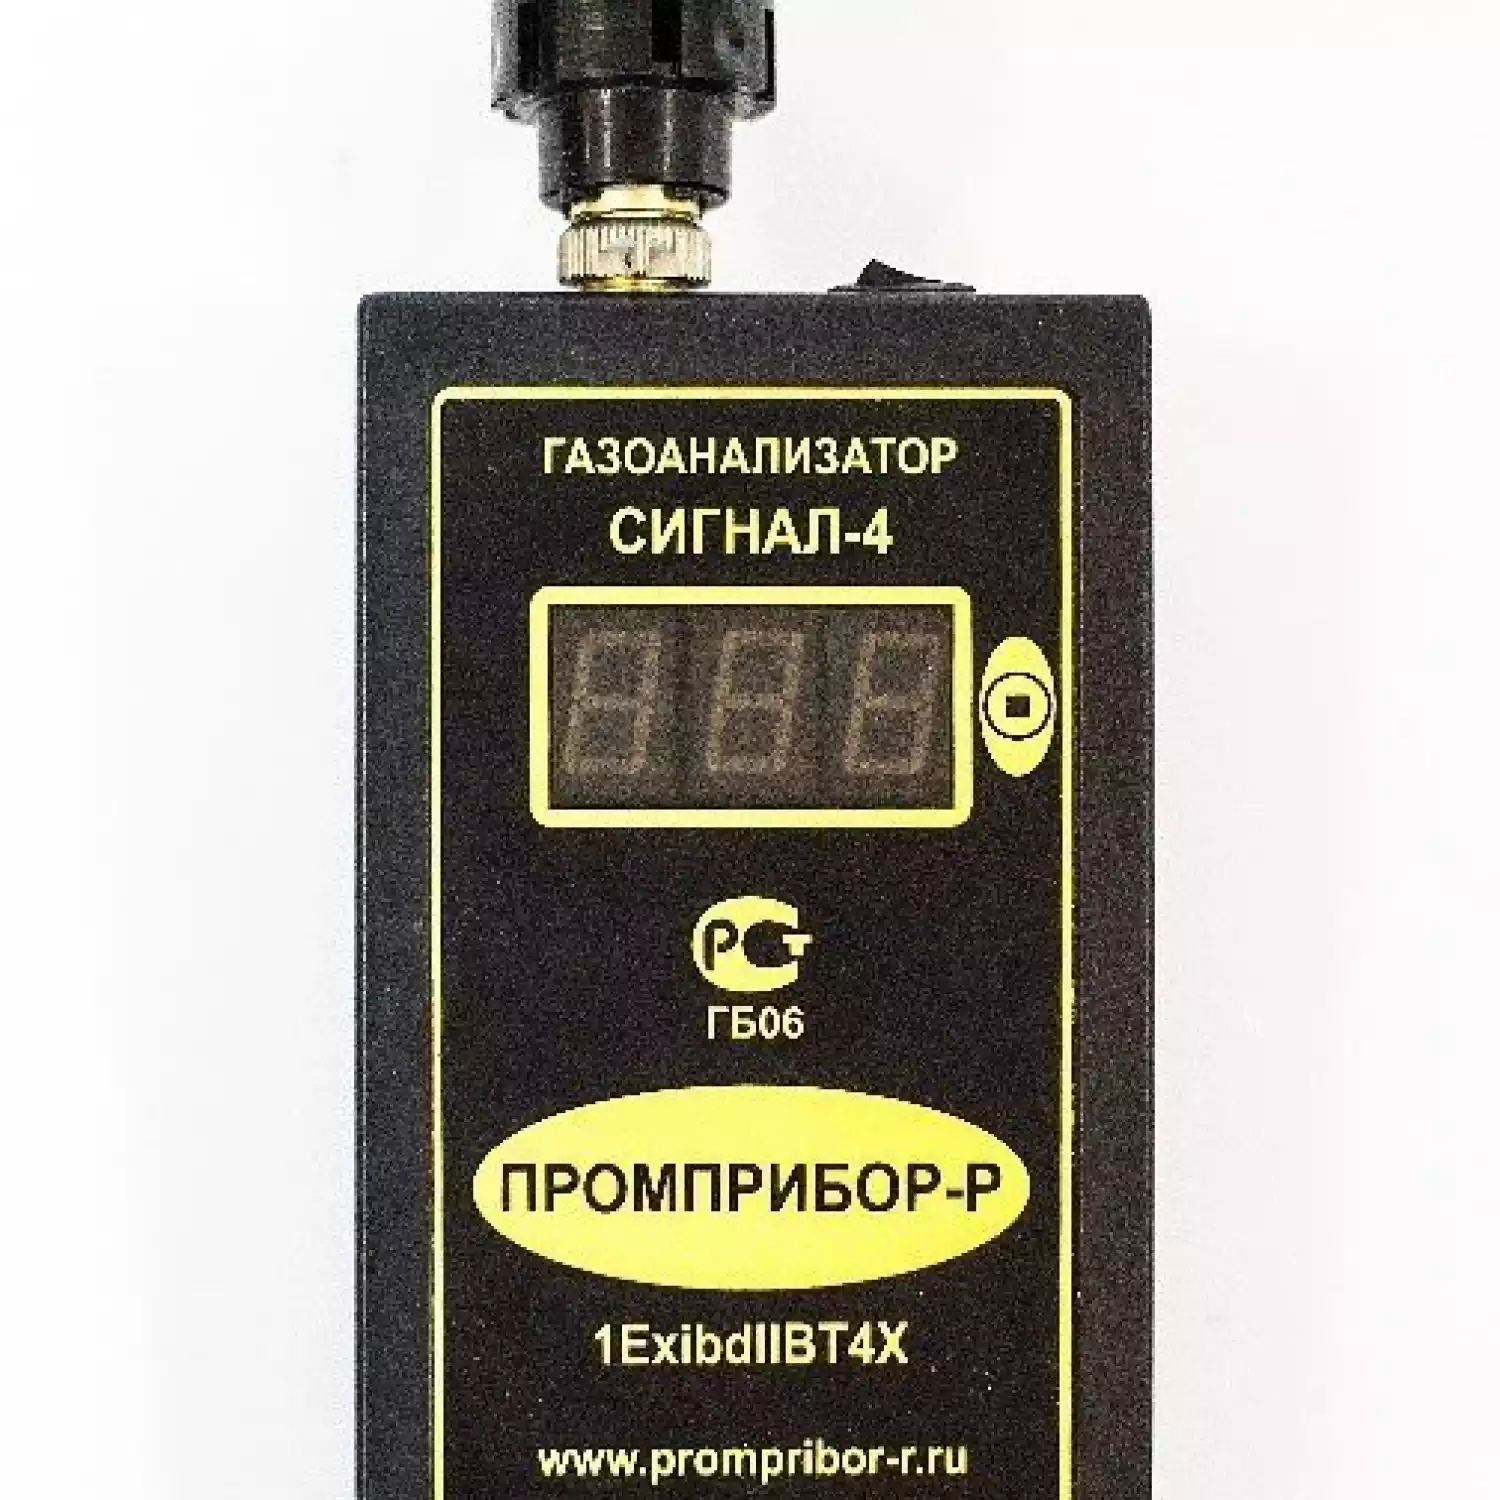 Персональный переносной газоанализатор Сигнал-4 пятиканальный на ВОГ (Термокаталитический) - 1